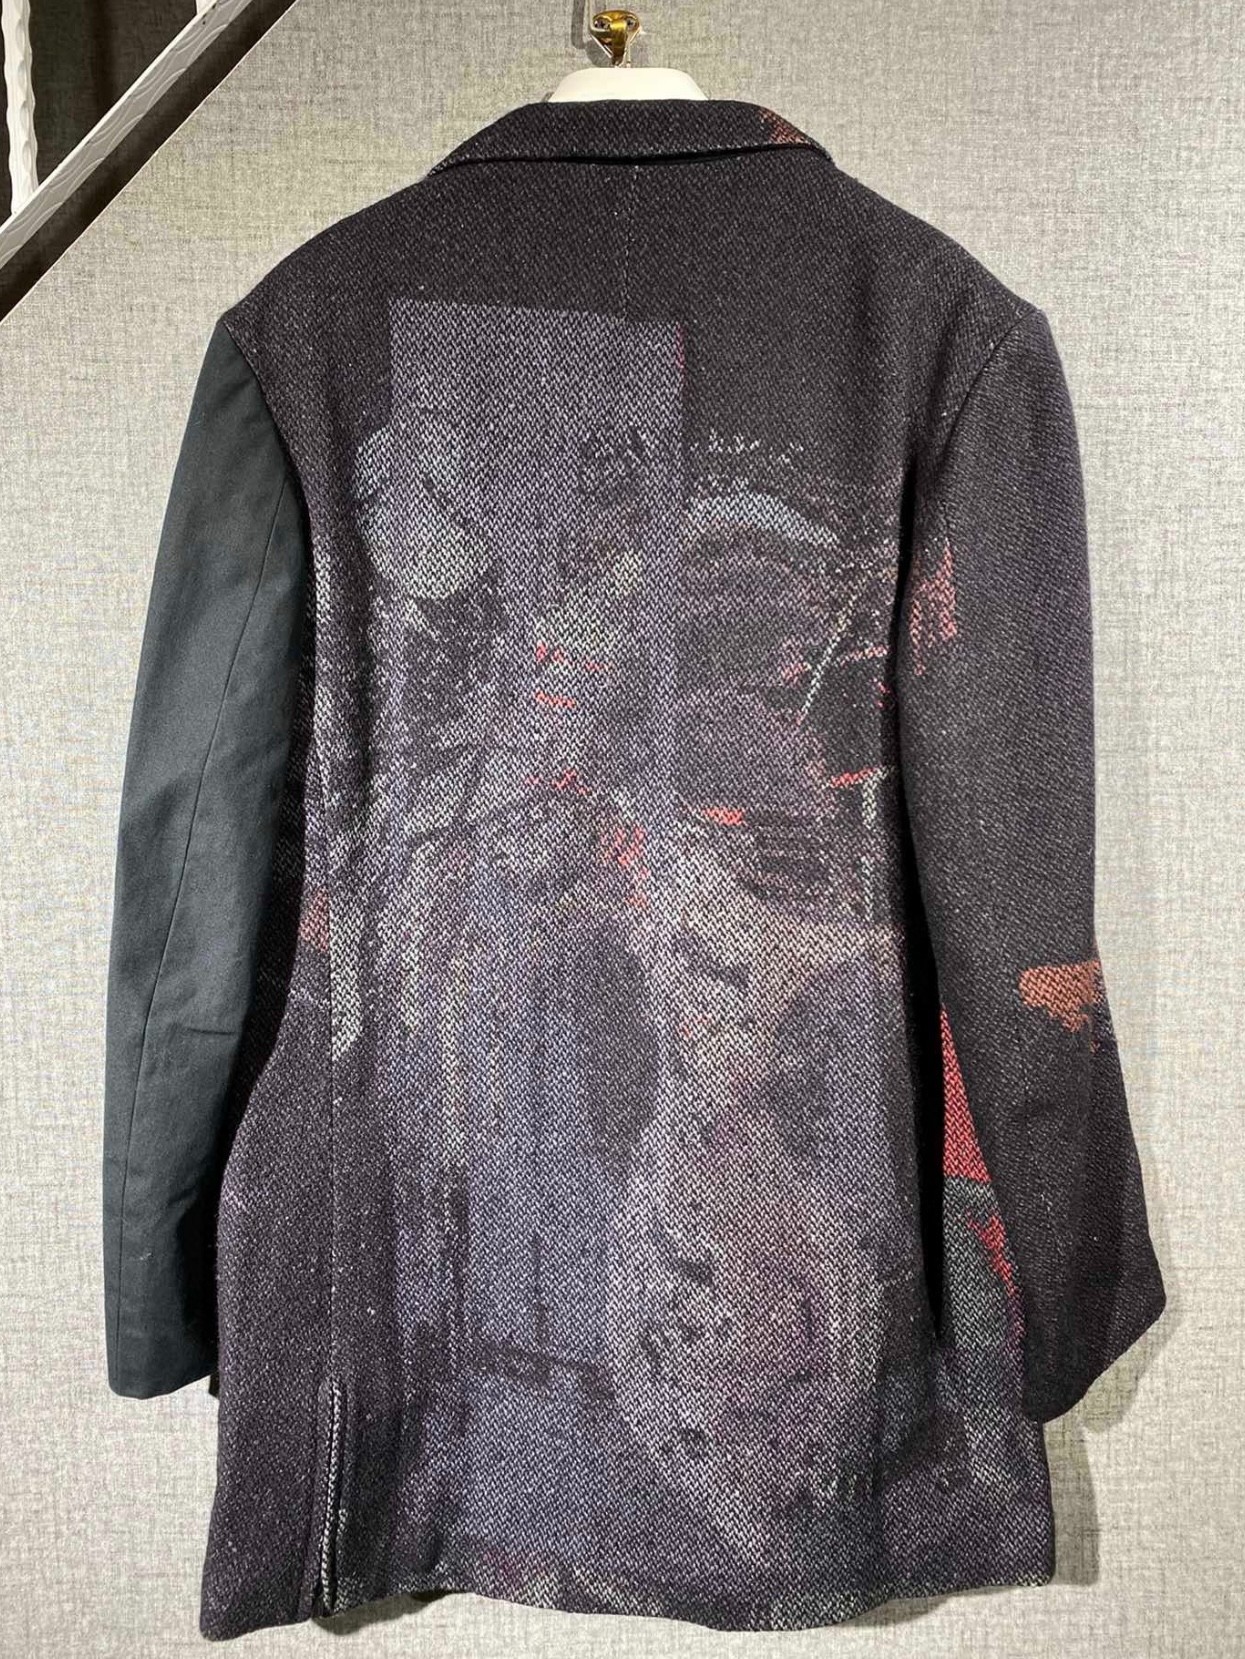 Yohji Yamamoto suit jacket - 2